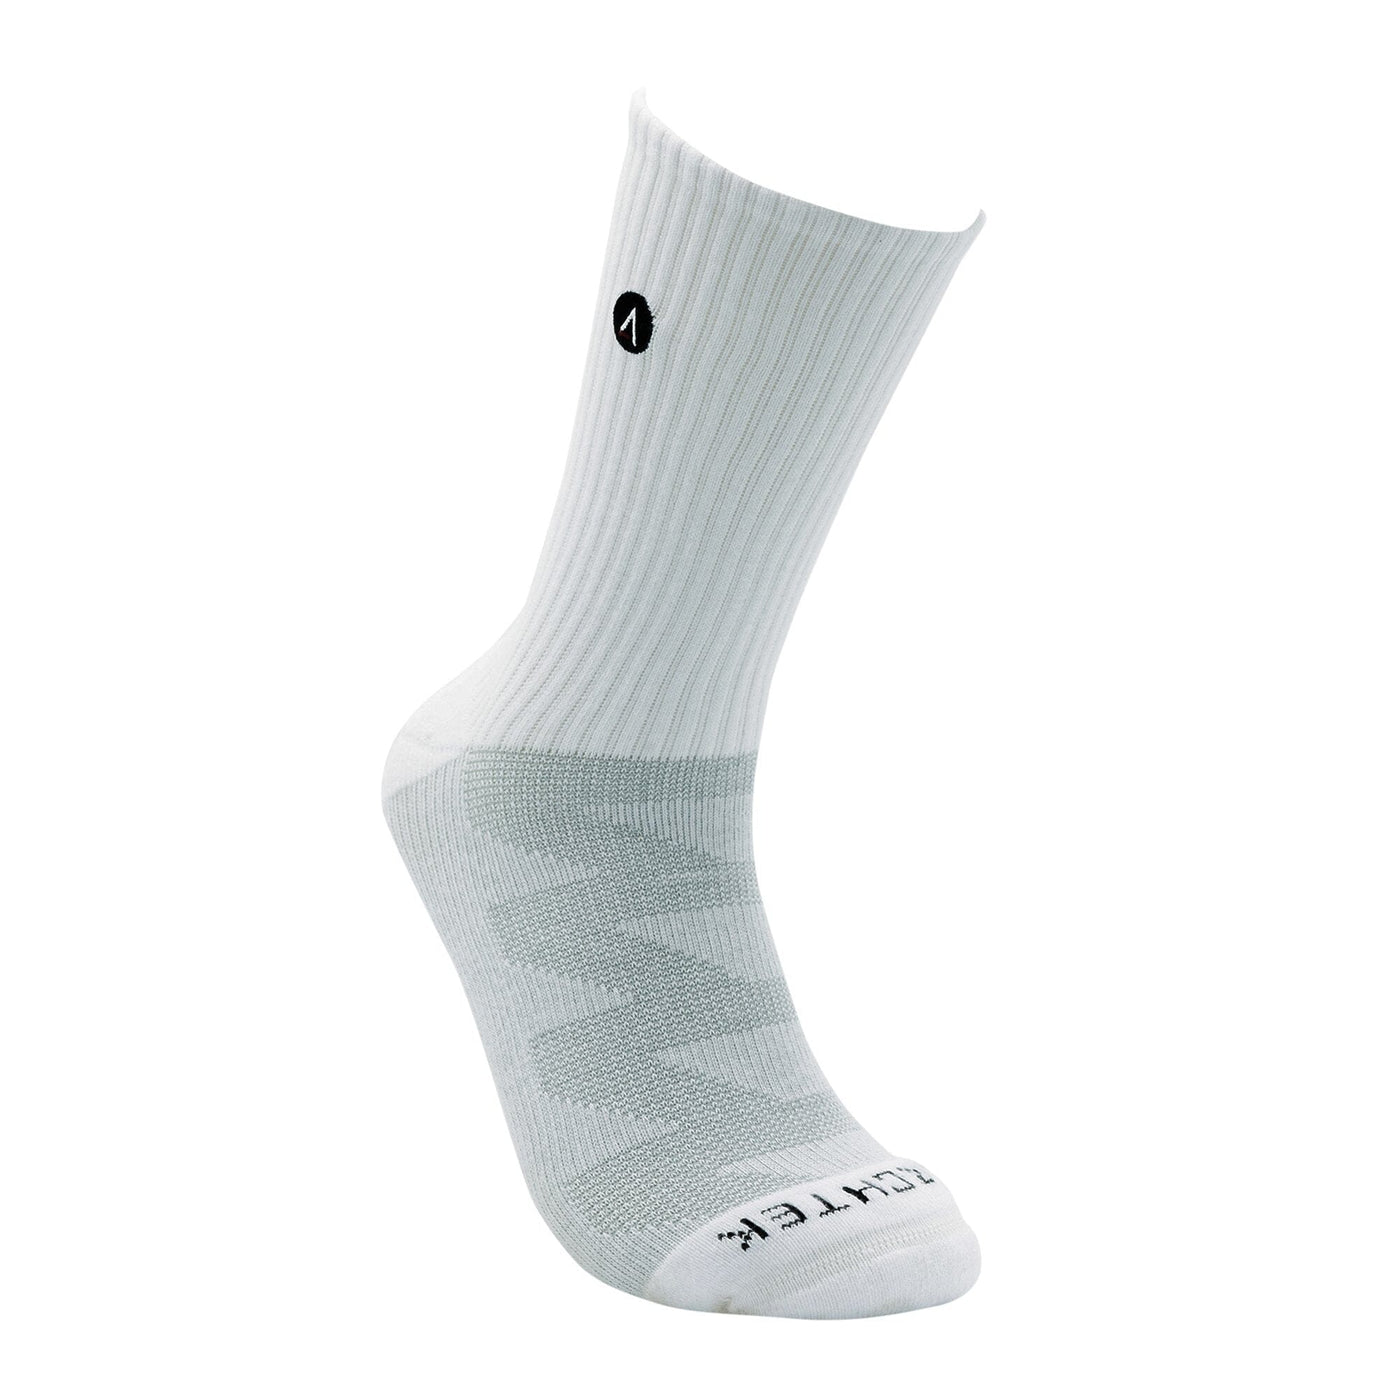 ArchTek® Crew Socks (4 Pack White) athletic socks ArchTek 